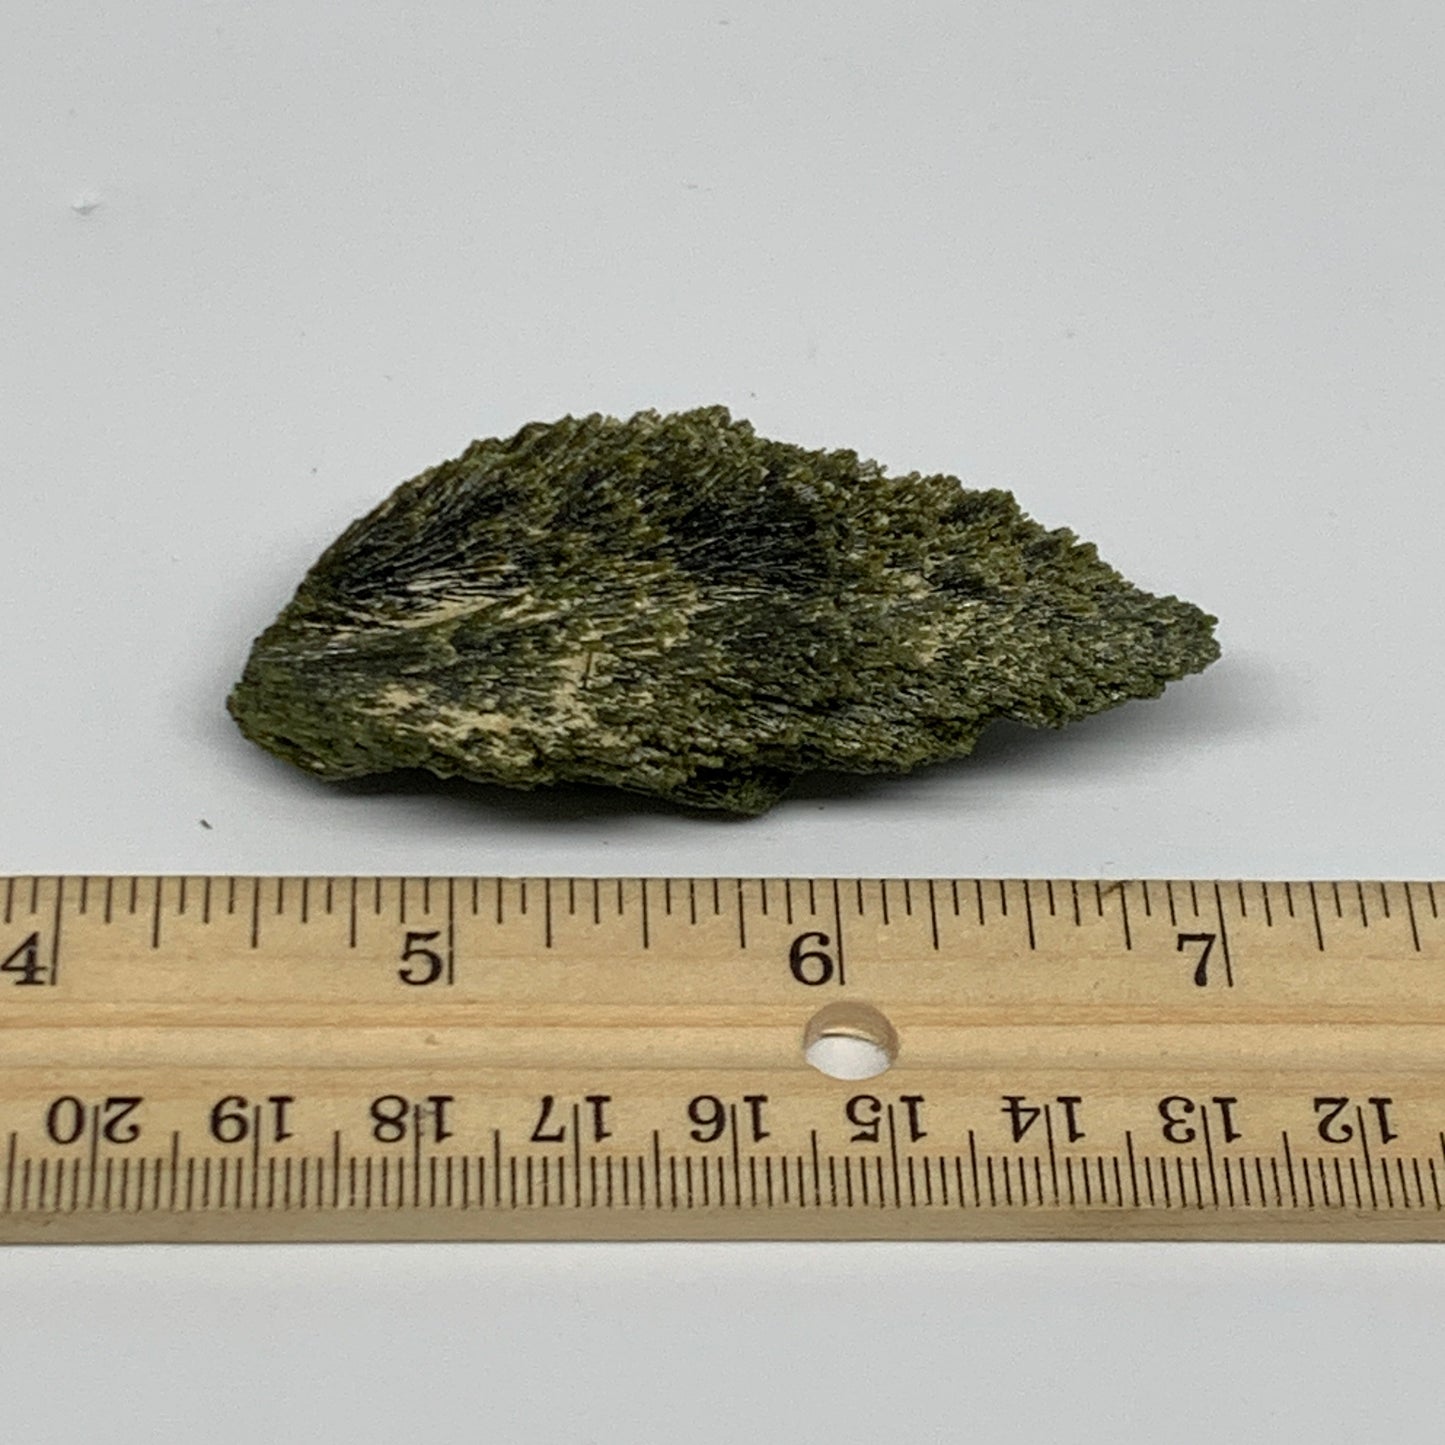 39.4g,2.6"x1.3"x0.6",Green Epidote Custer/Leaf Mineral Specimen @Pakistan,B27607